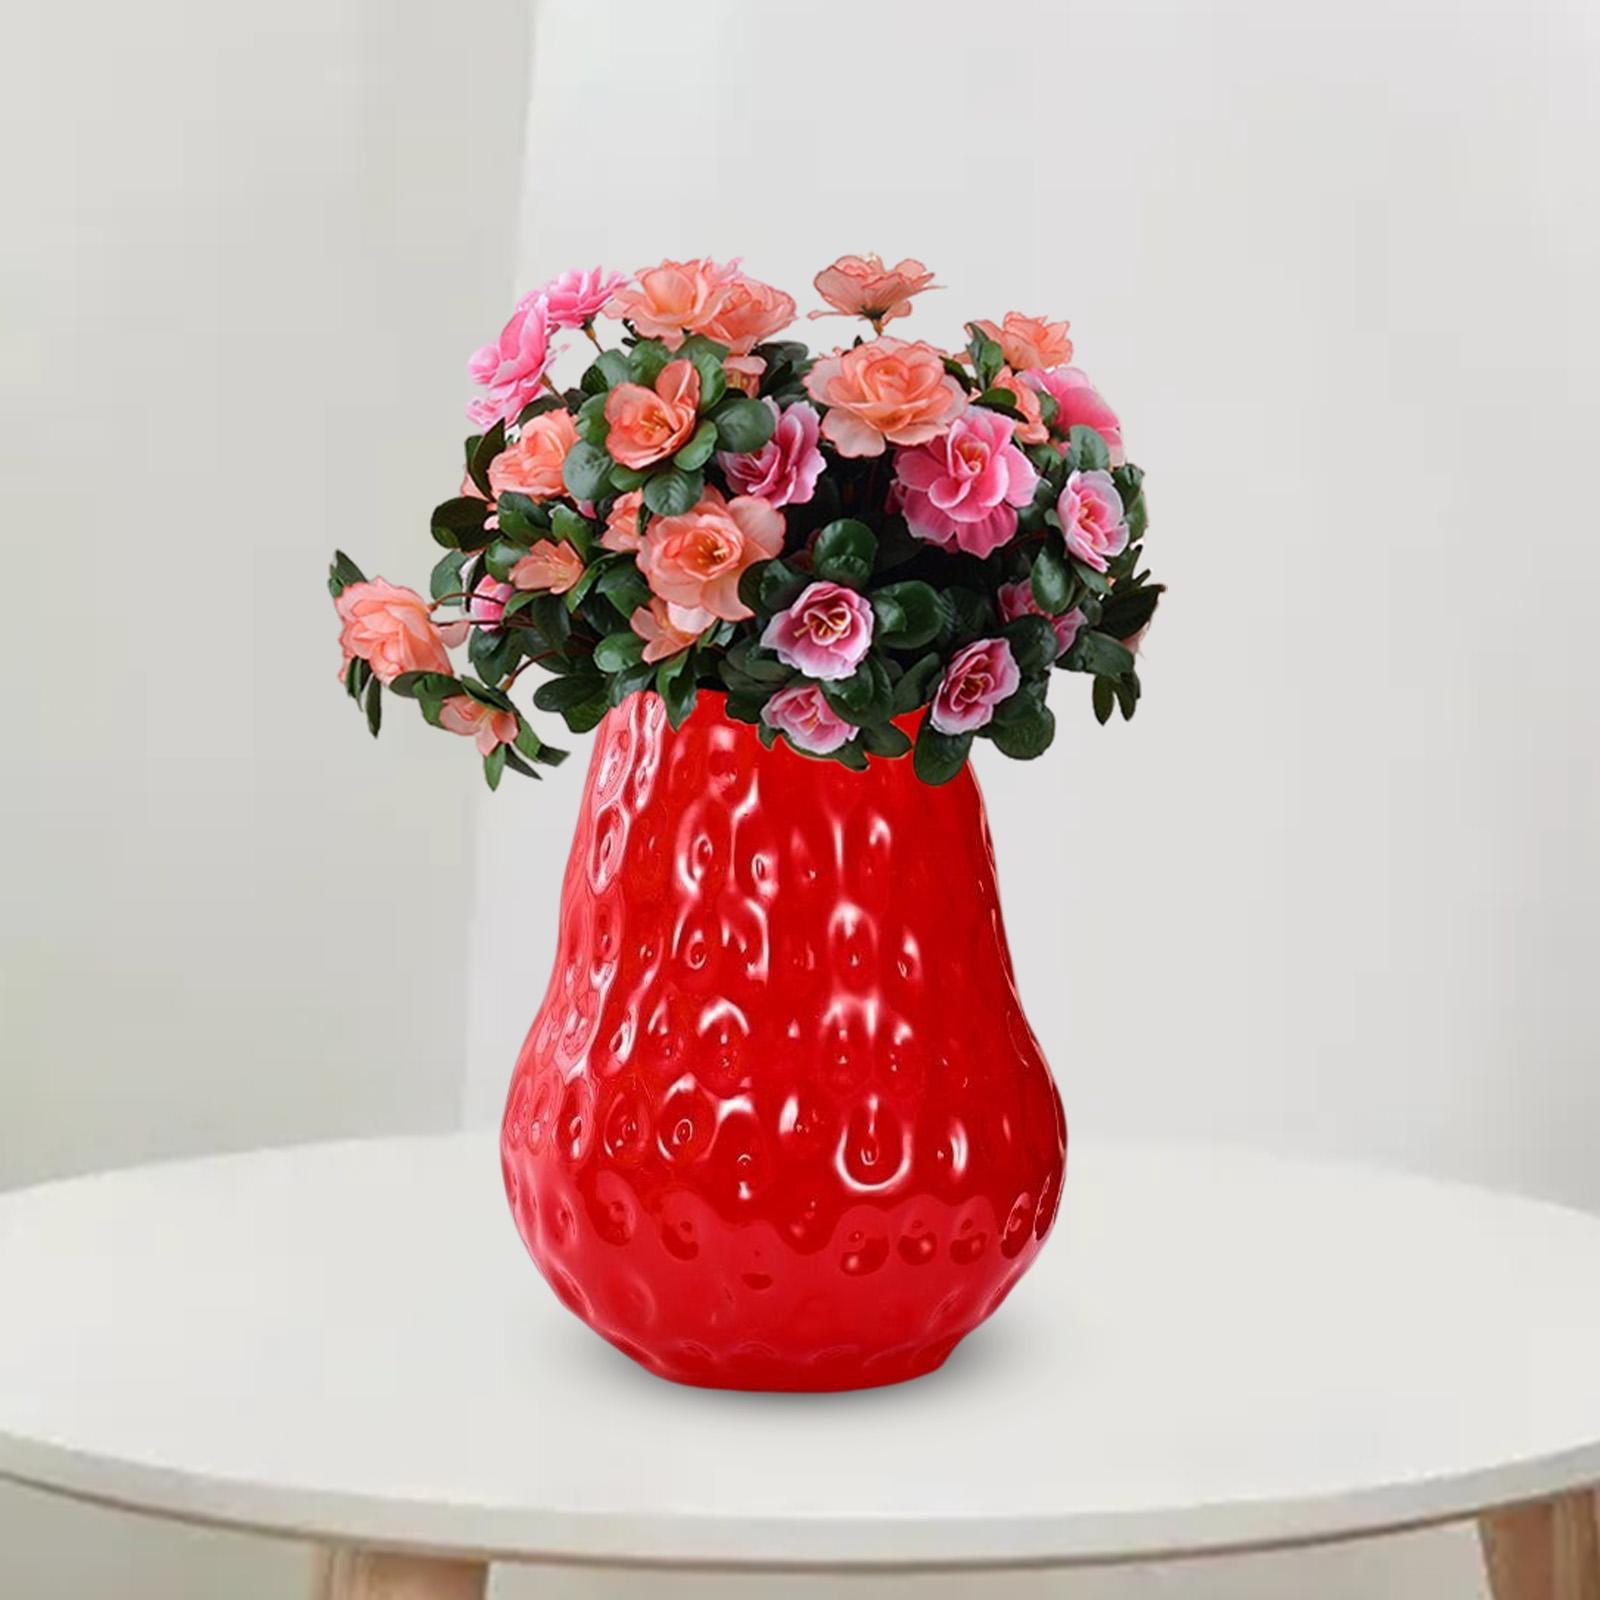 Glass Vase for Flowers Desktop Vase Flower Pot Ornament Centerpiece  Flower Vase for Kitchen Home Bedroom Dining Table Decoration